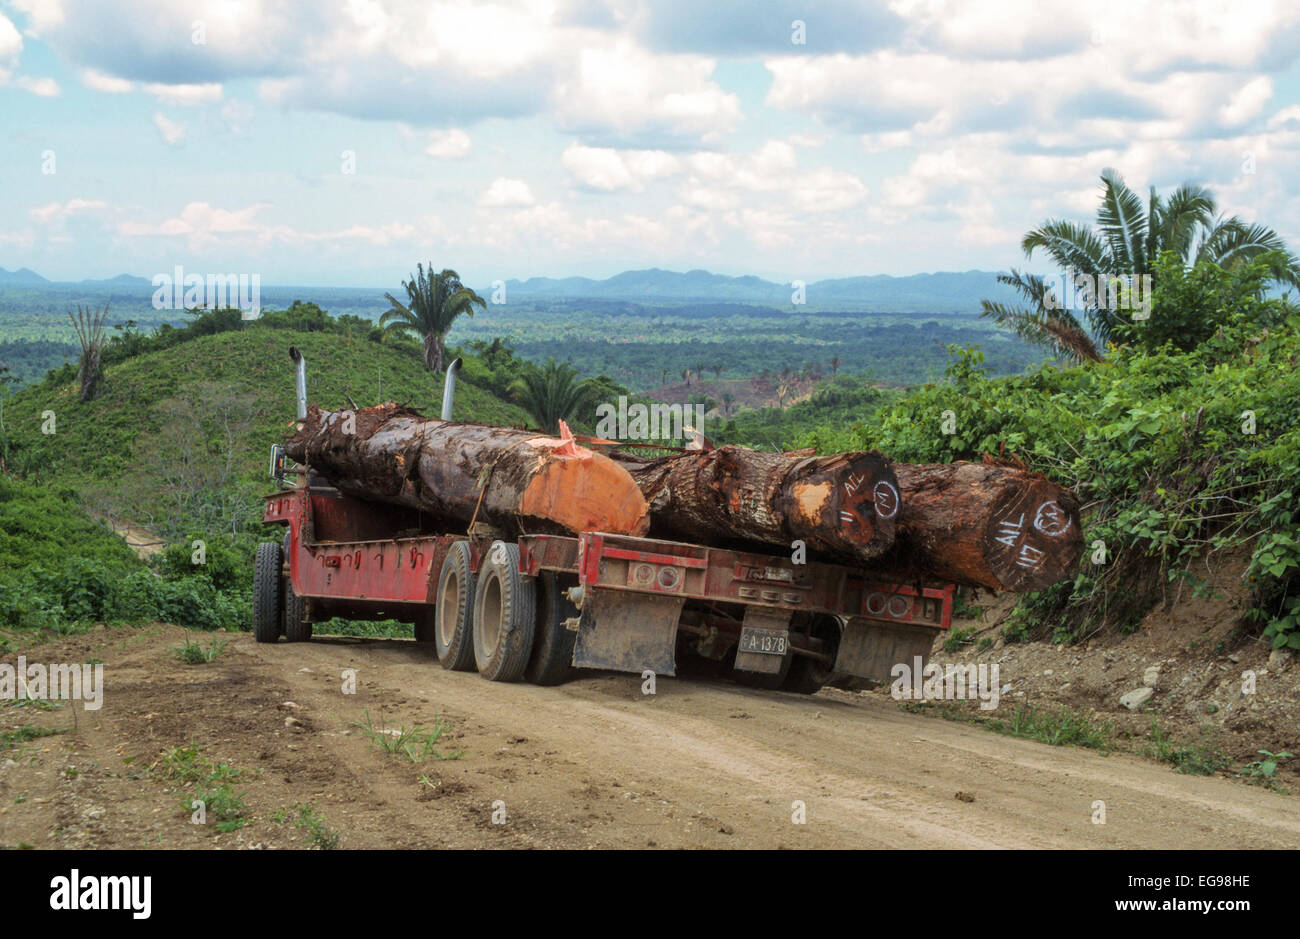 Tropischen Regenwald Protokollierung. Lkw schleppen Hartholzbäume schneiden in einem Arbeitsgang selektiver Holzeinschlag. Die Protokolle sind Santa Maria (links) und Mahagoni (C, R) Stockfoto